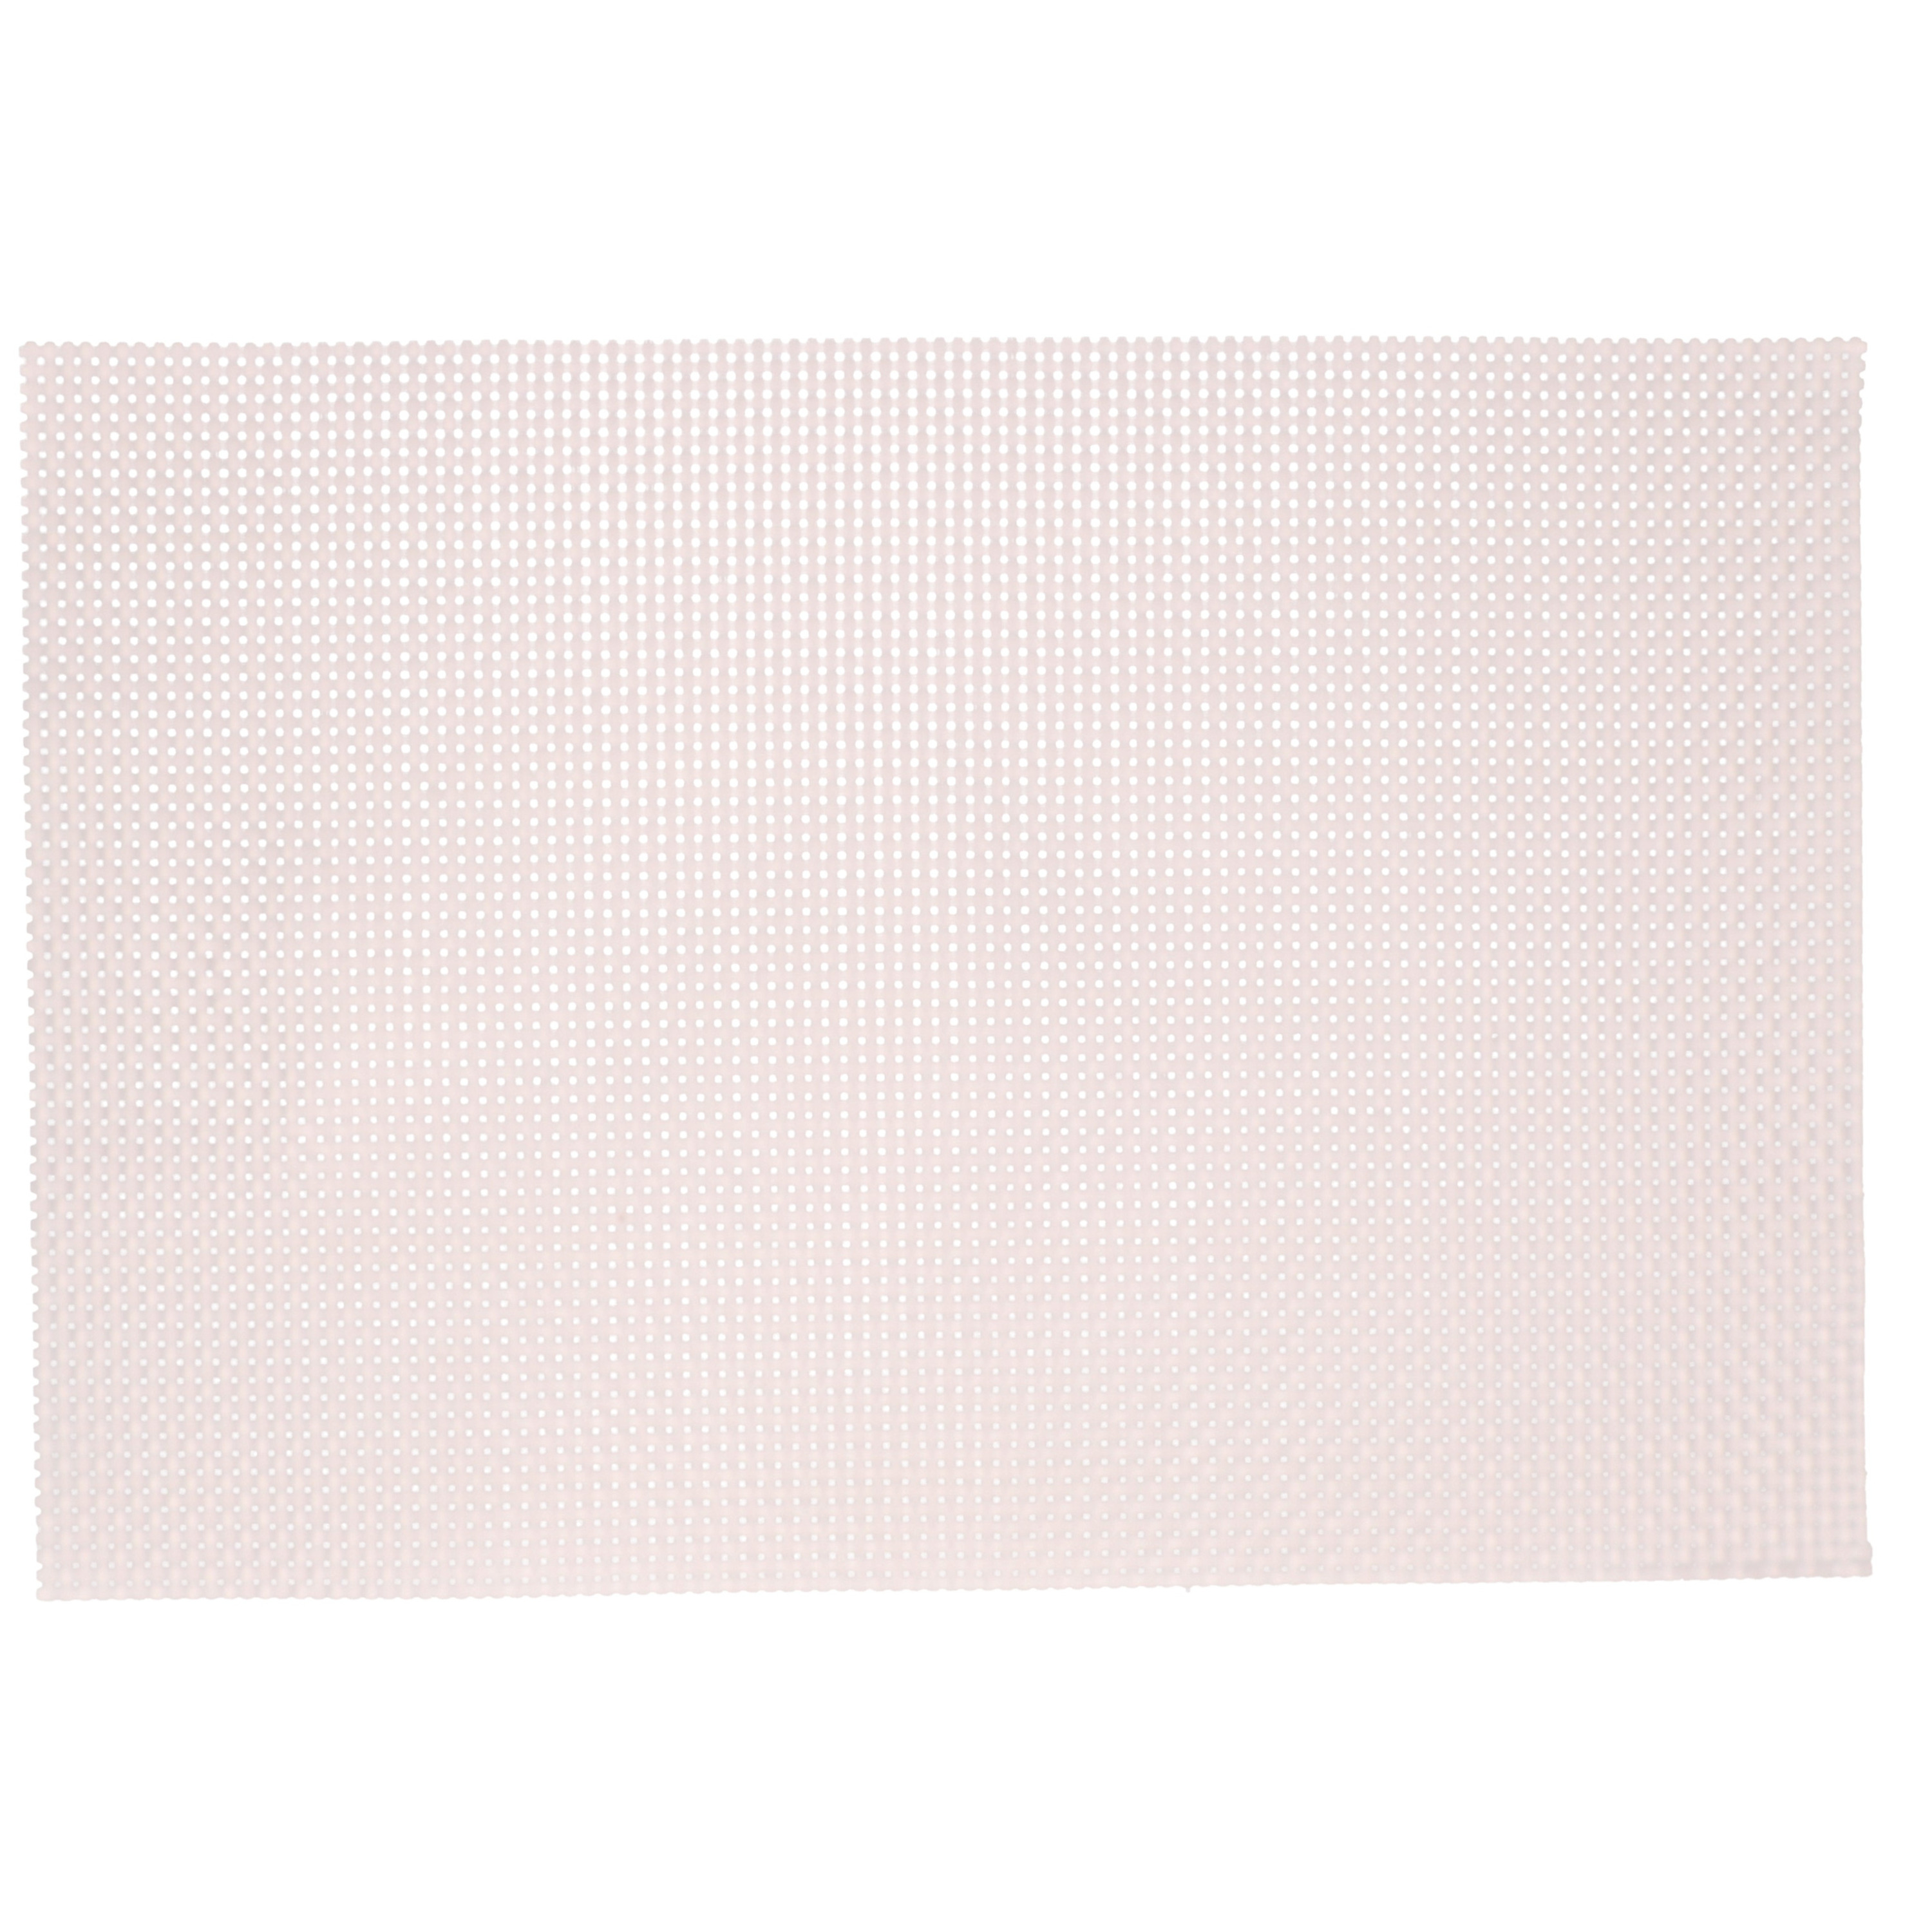 1x Rechthoekige onderleggers-placemats voor borden roze parelmoer geweven print 29 x 43 cm